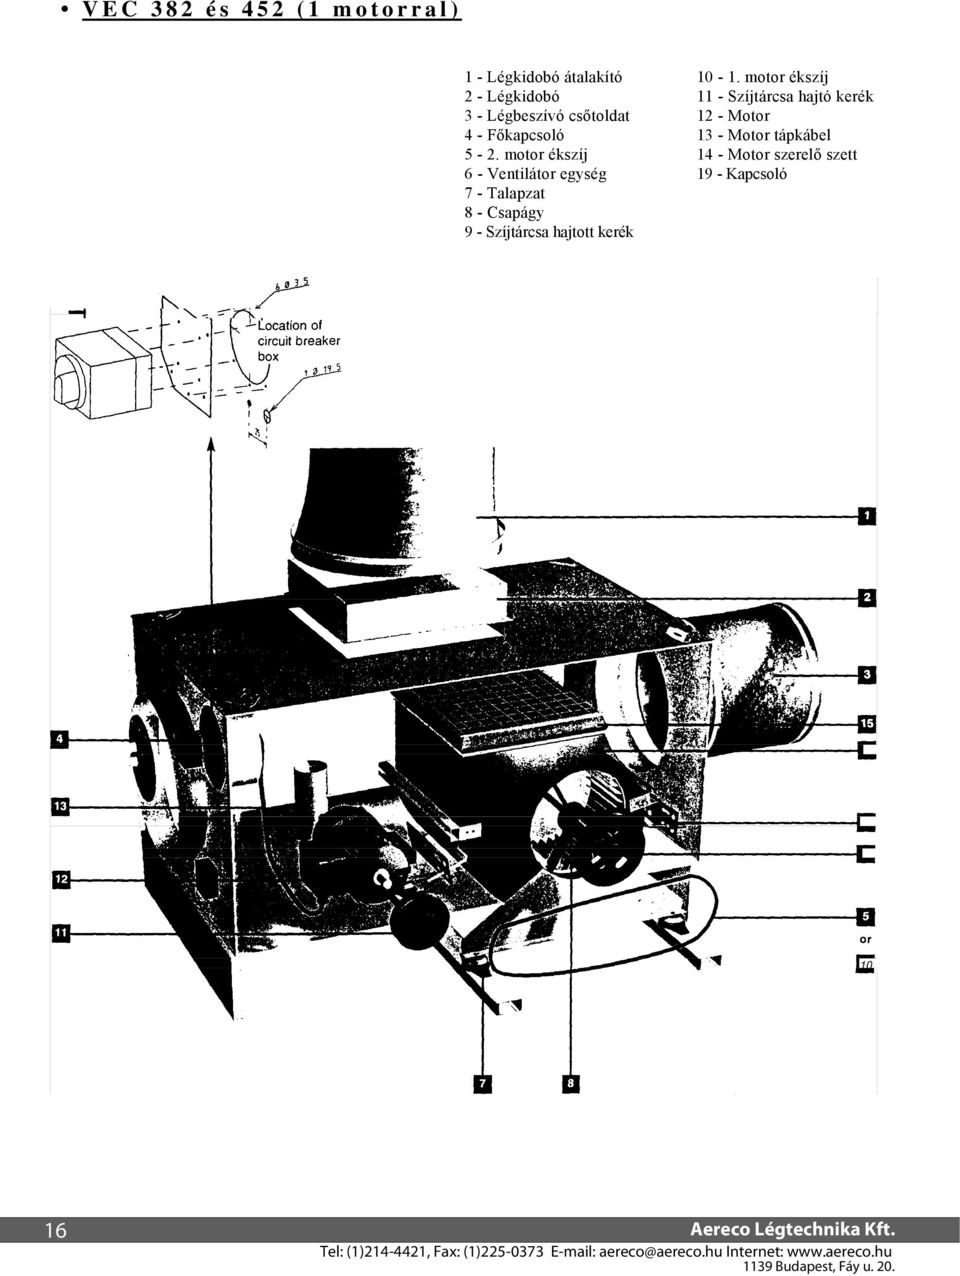 motor ékszíj 6 - Ventilátor egység 7 - Talapzat 8 - Csapágy 9 - Szíjtárcsa